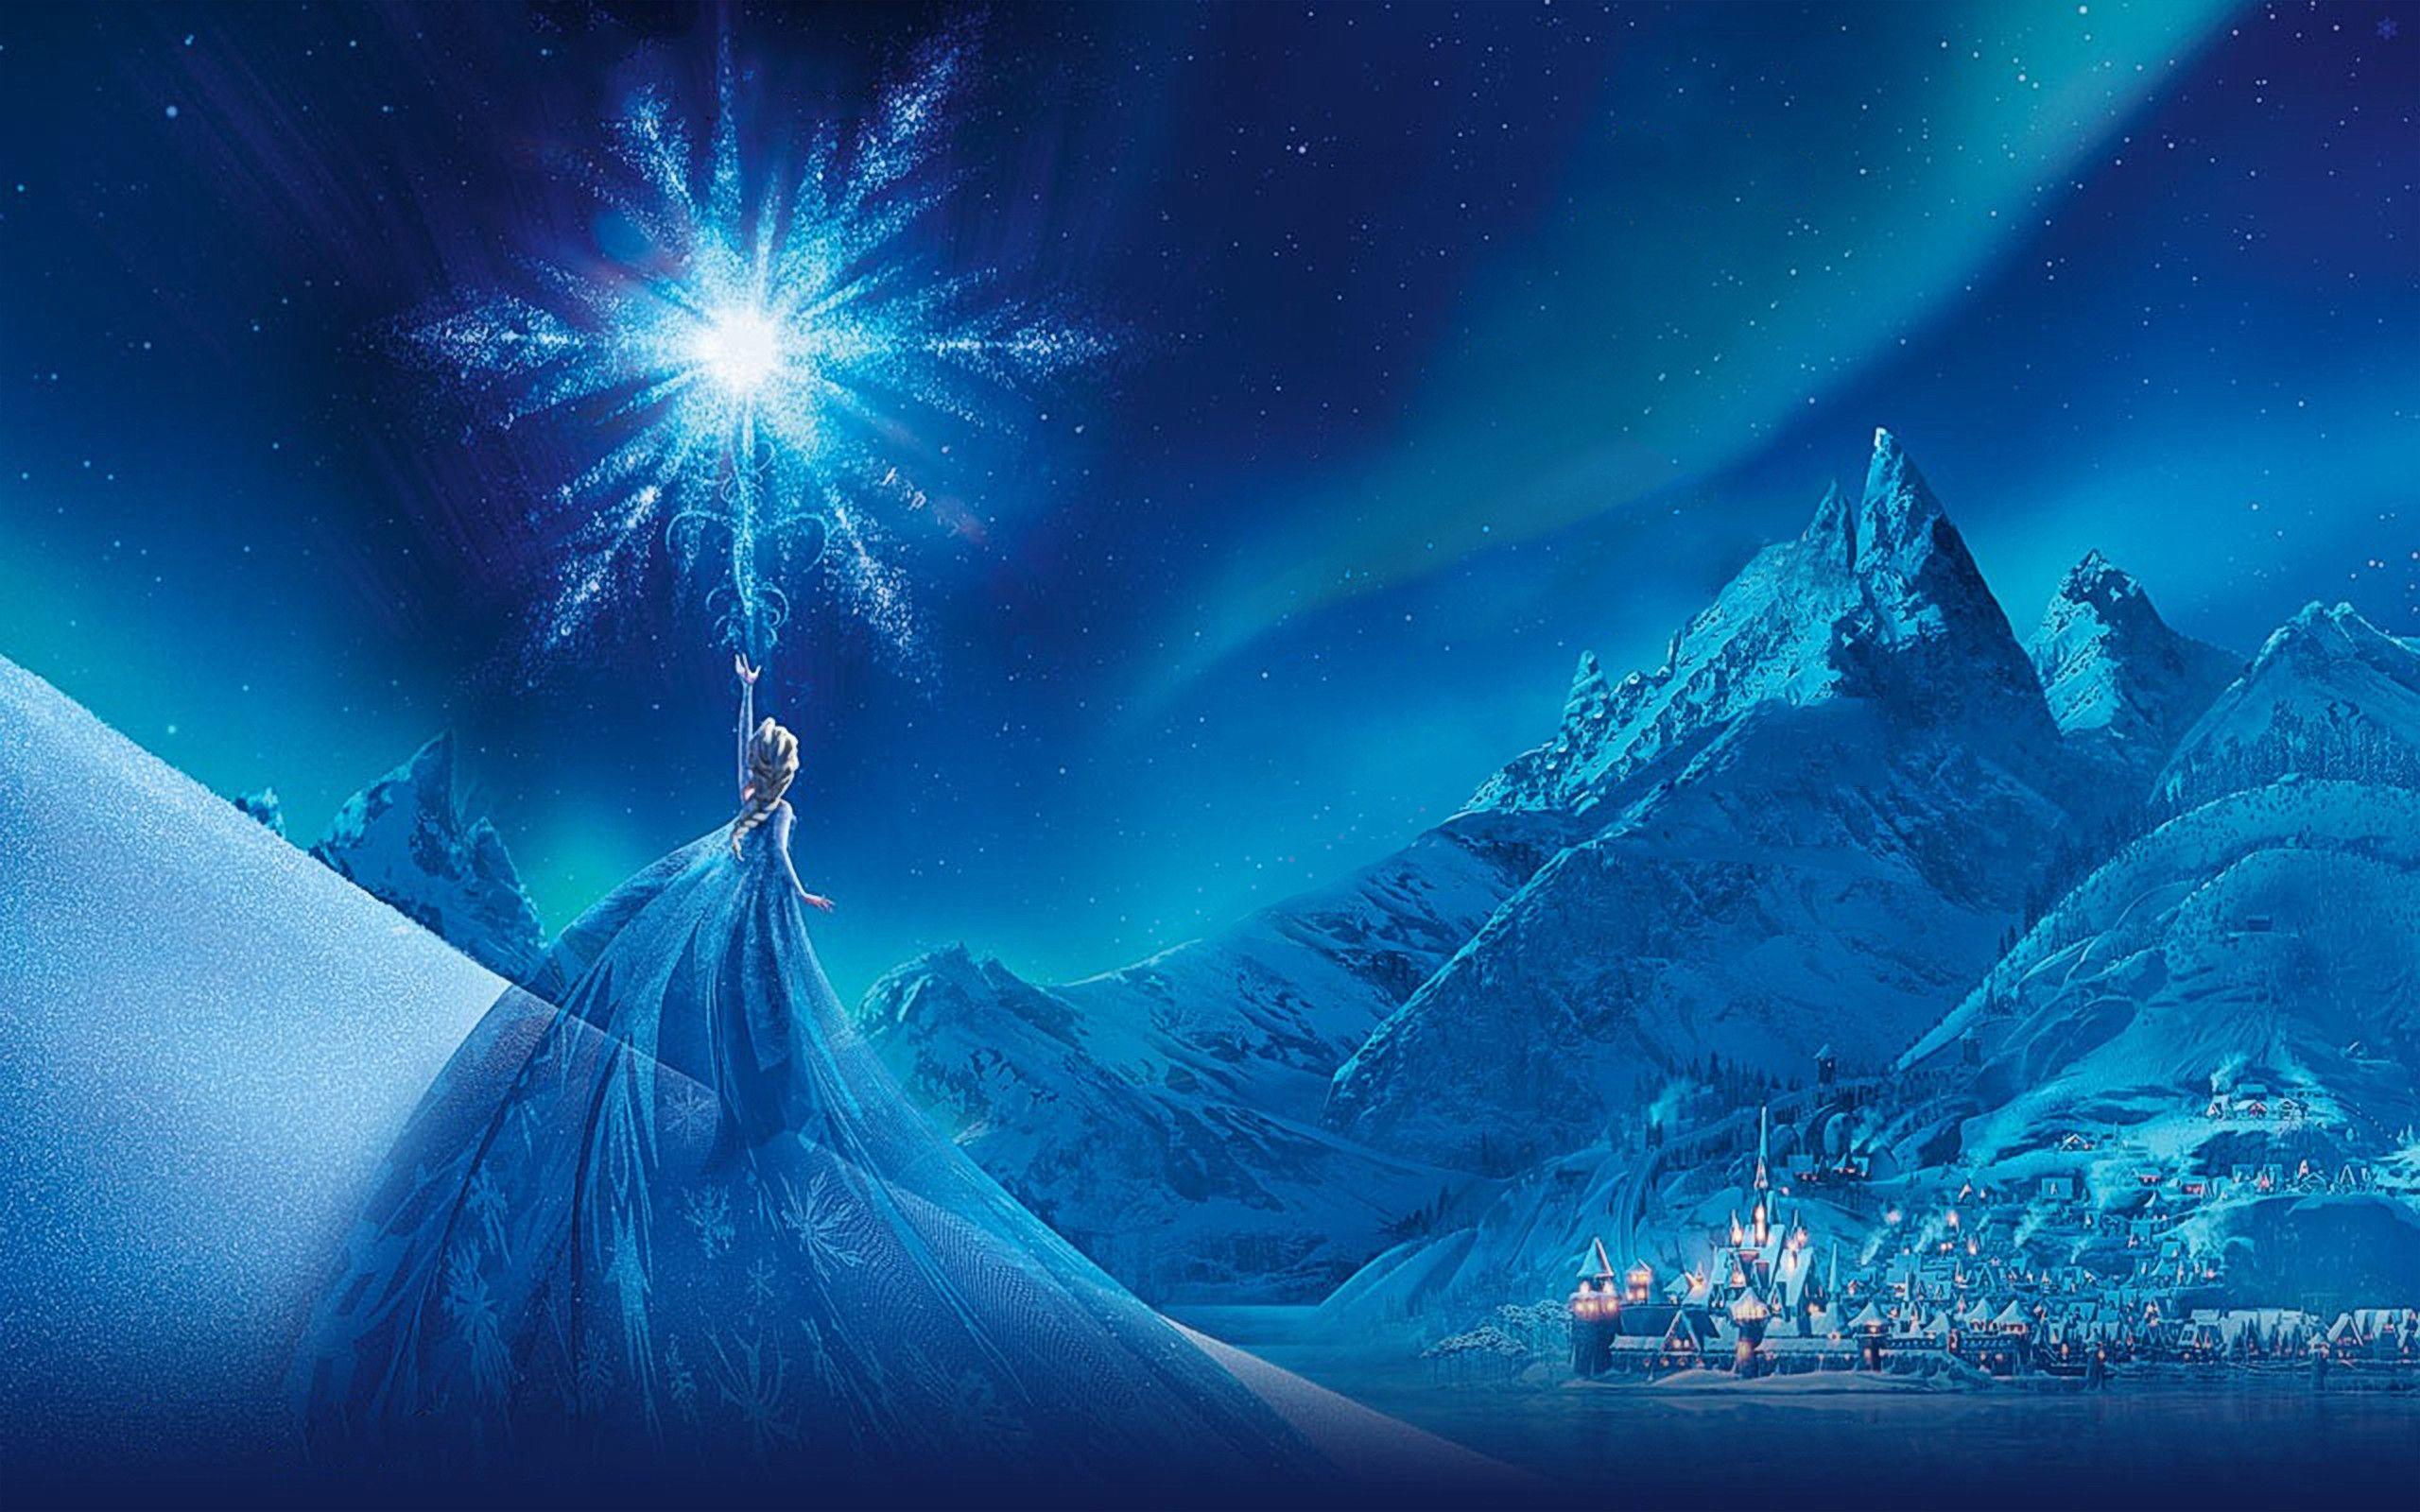 Movie Frozen Elsa (Frozen) Frozen (Movie) Snow Arendelle Wallpaper. Frozen wallpaper, Frozen image, Frozen movie